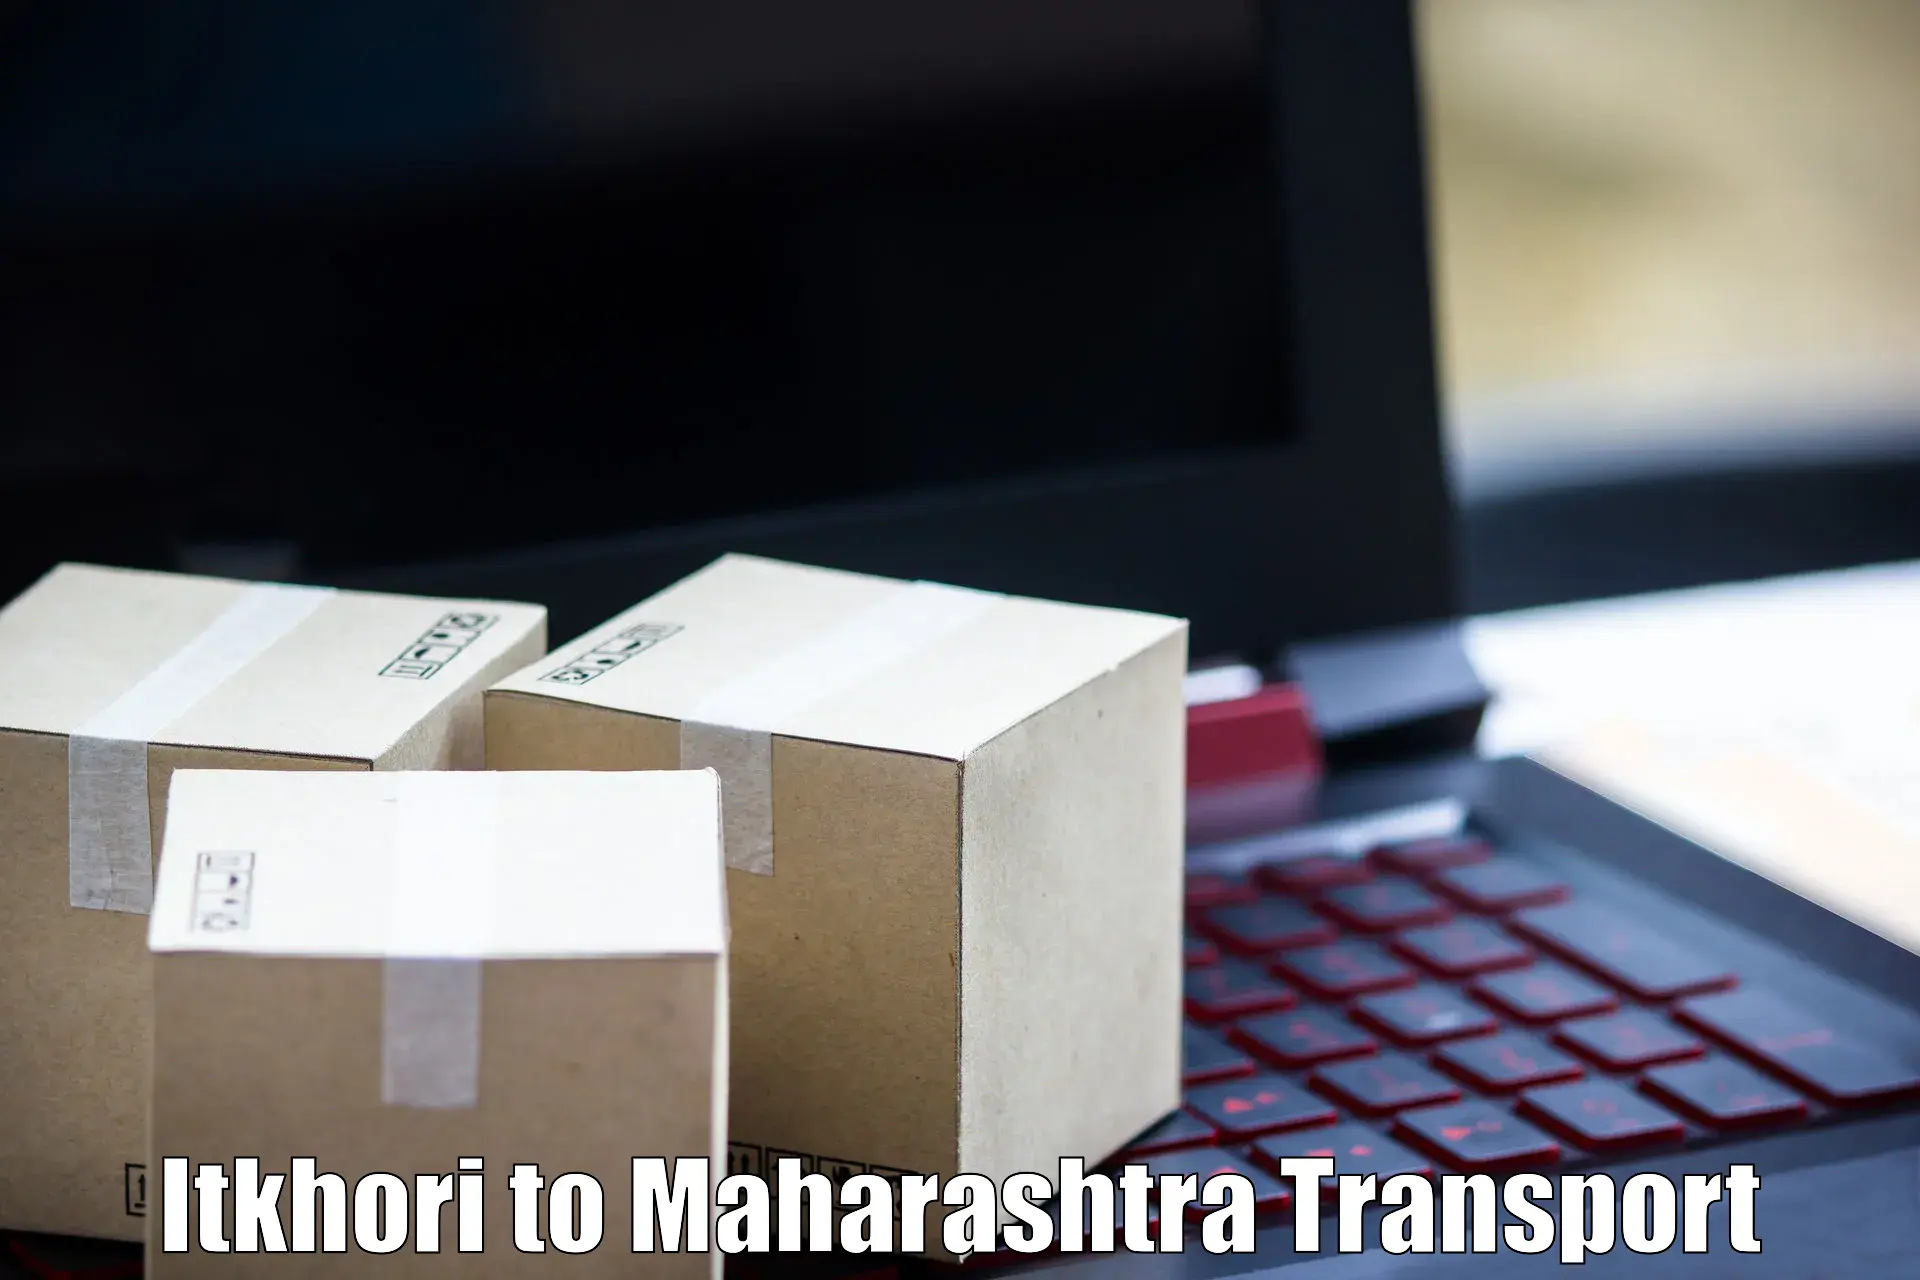 Shipping partner Itkhori to Kandhar